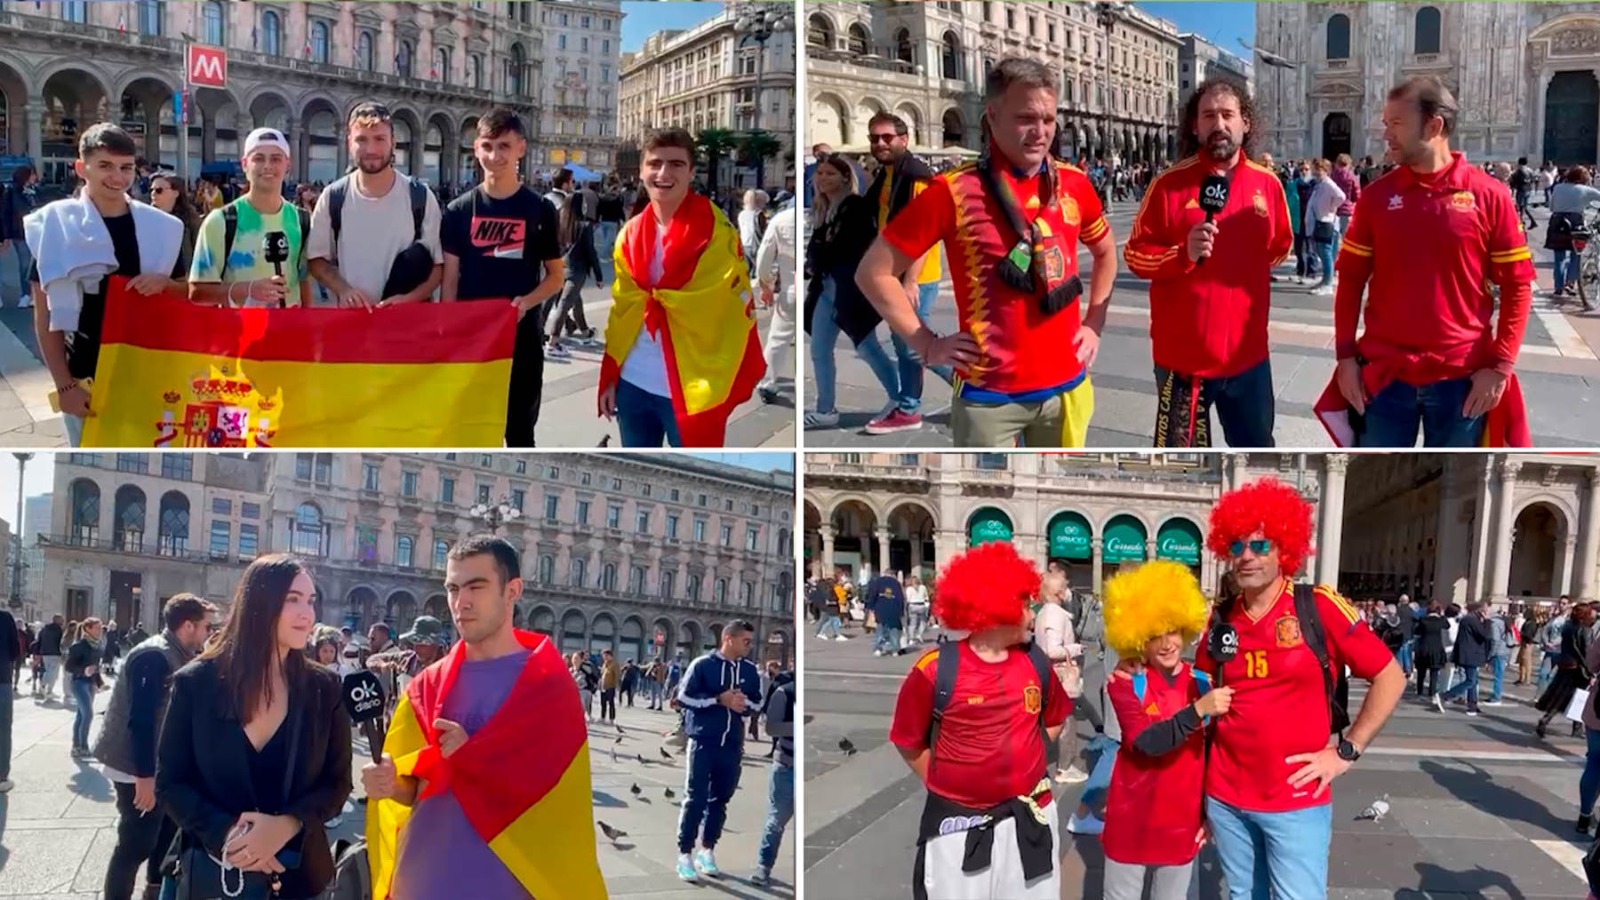 La afición de España, presente en Milán: “Estamos muy orgullosos de ser españoles”.